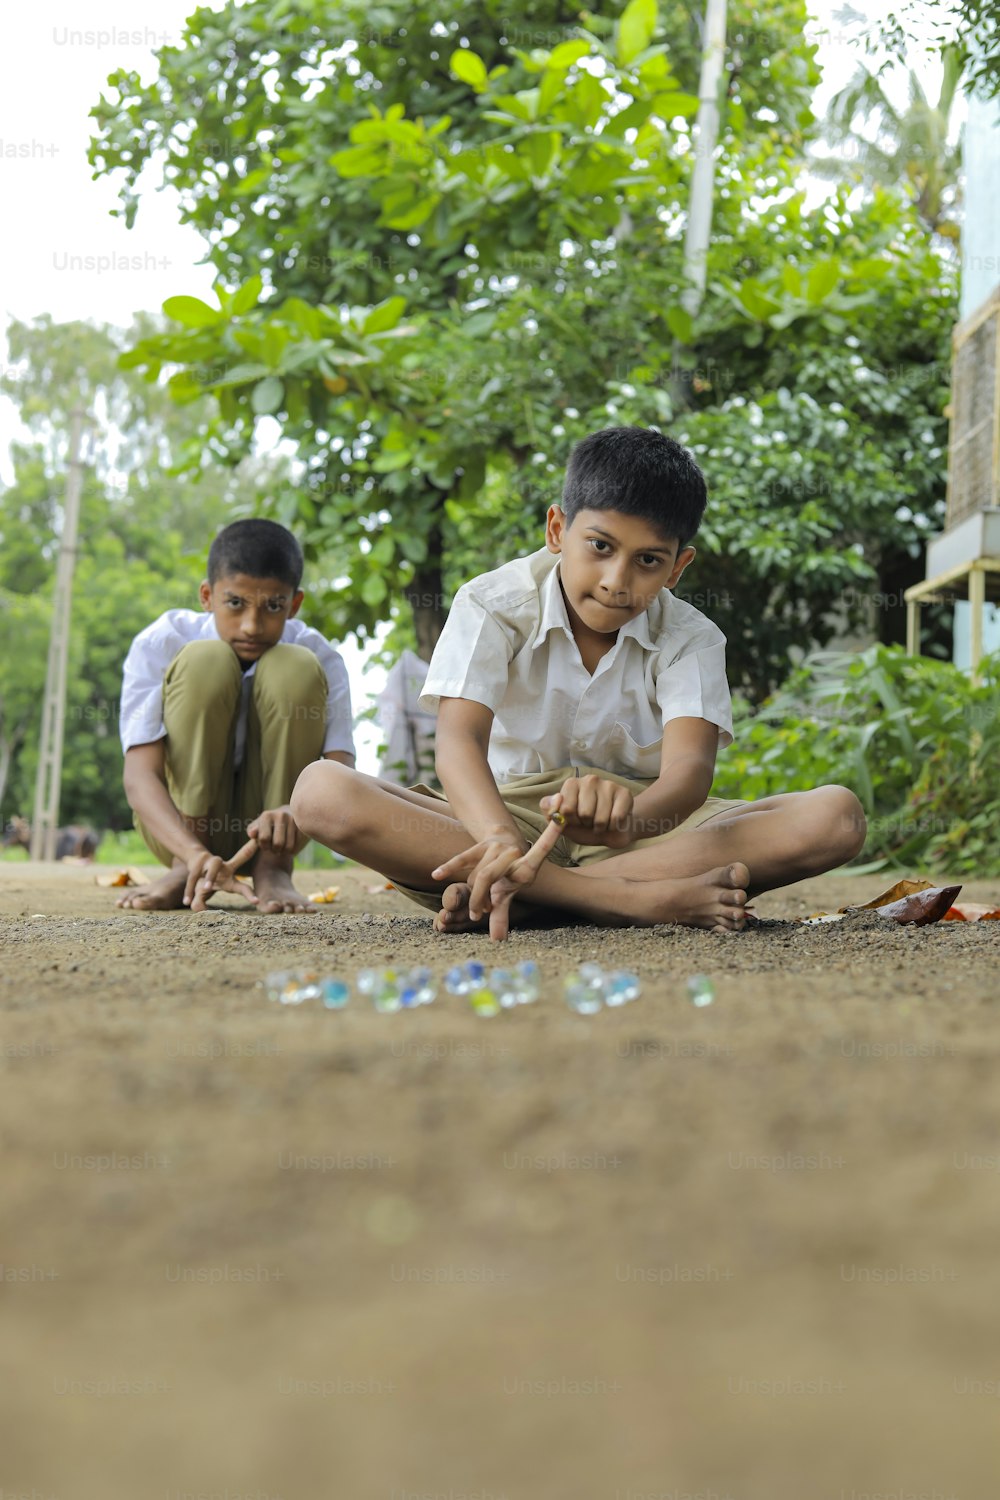 Niño indio jugando con canicas de vidrio, que es un antiguo juego de pueblo indio. Las canicas de vidrio también se llaman Kancha en idioma hindi.